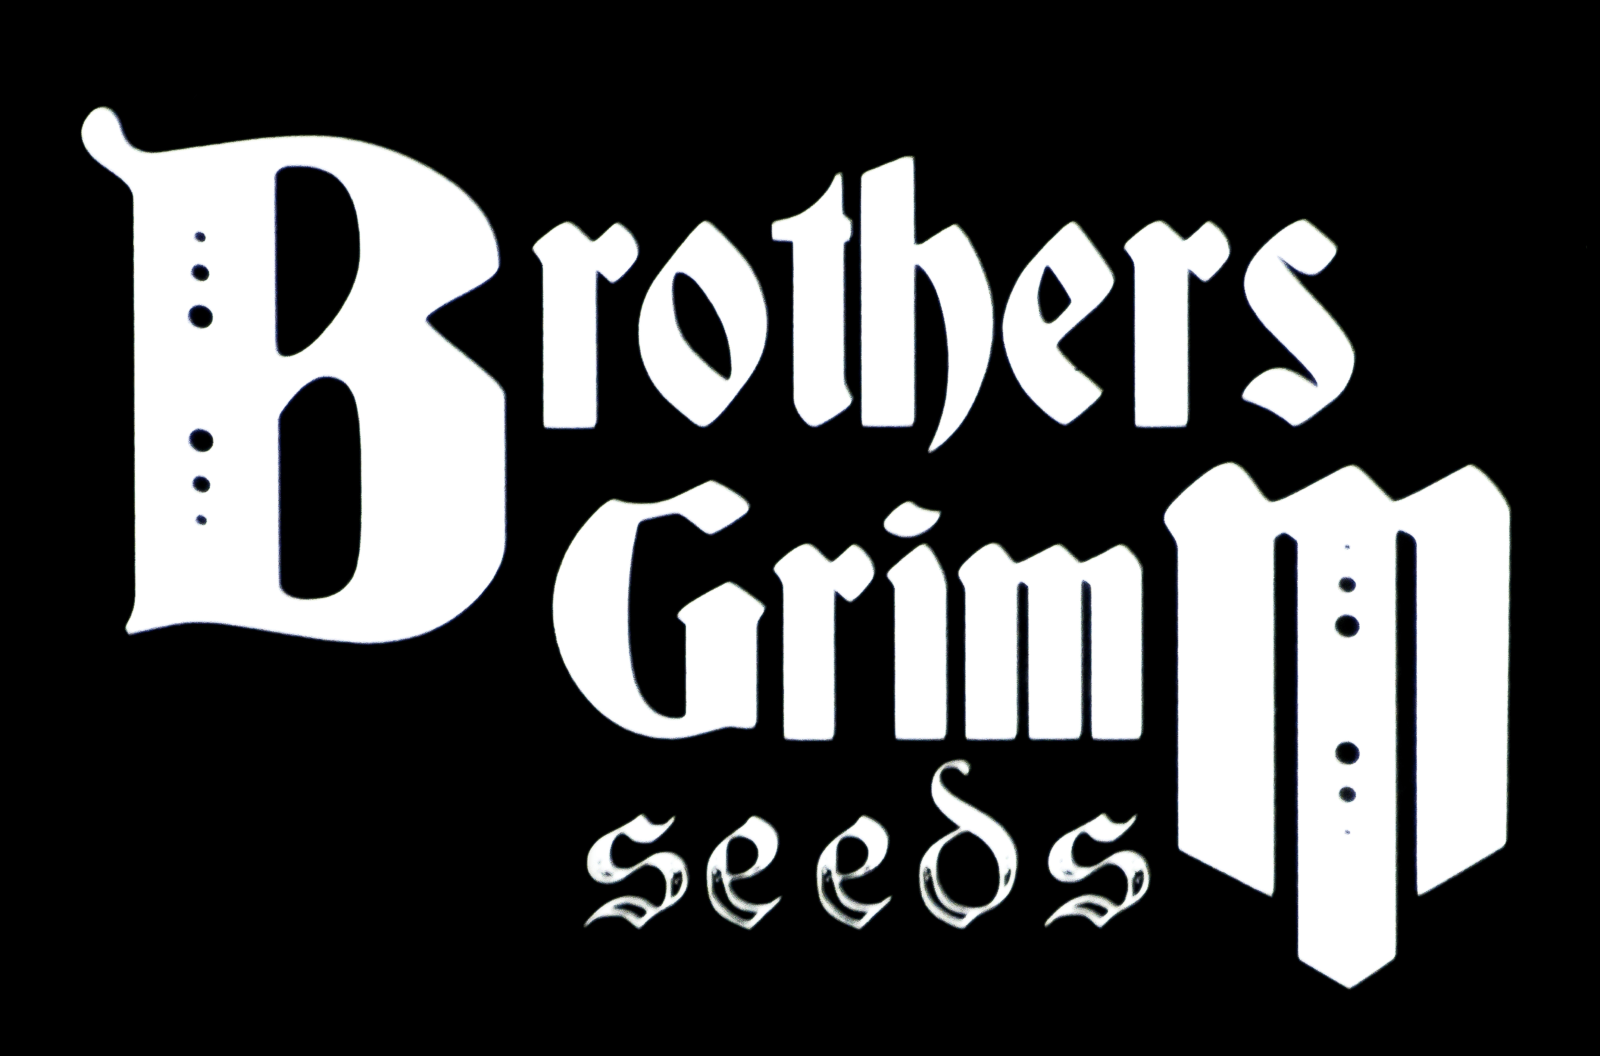 brothersgrimmseeds.com